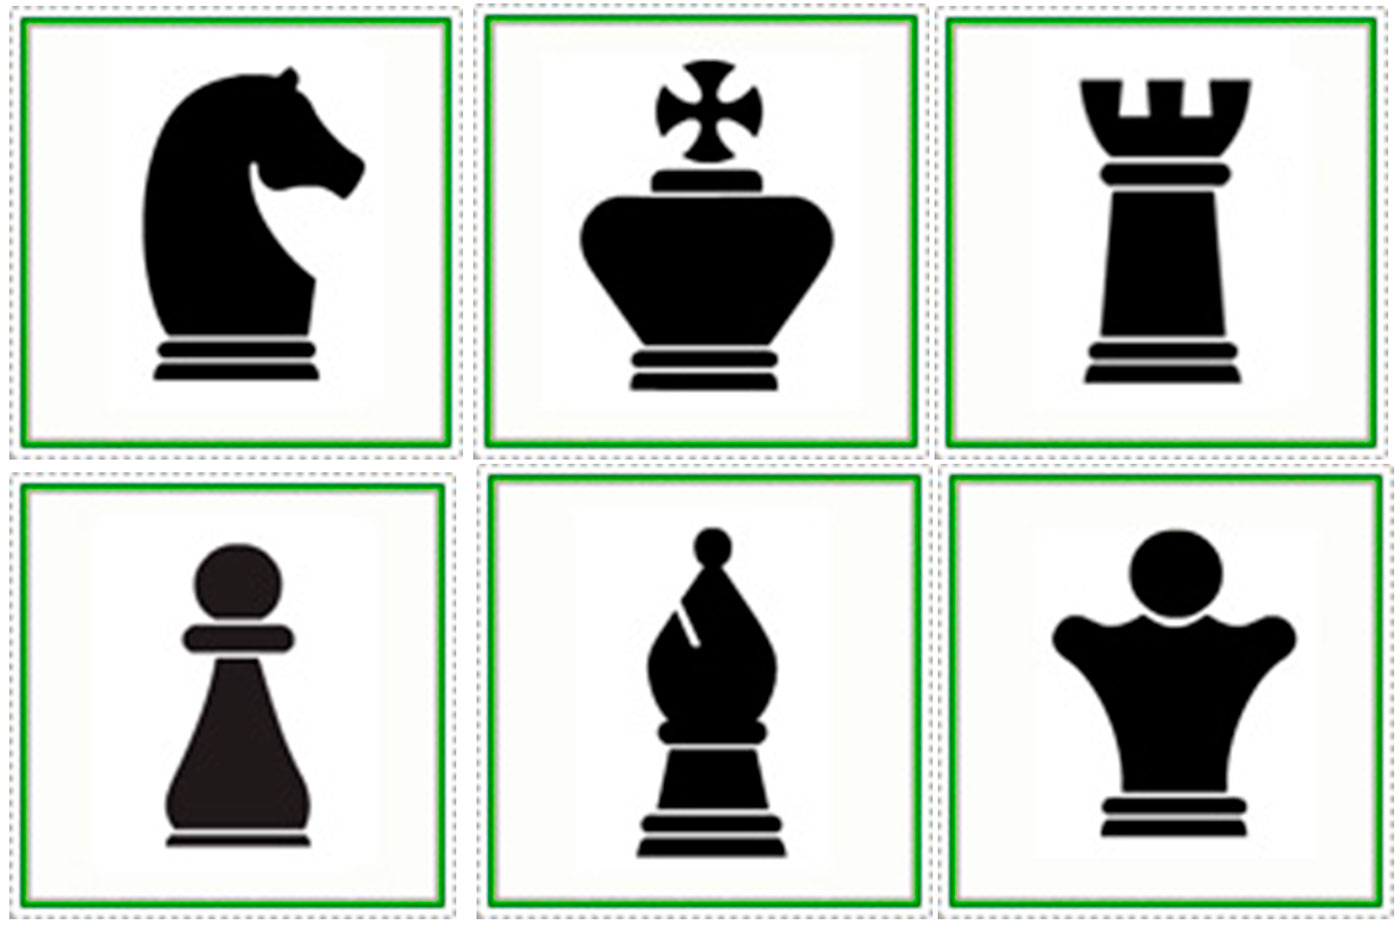 Шахматные фигура для распечатывания